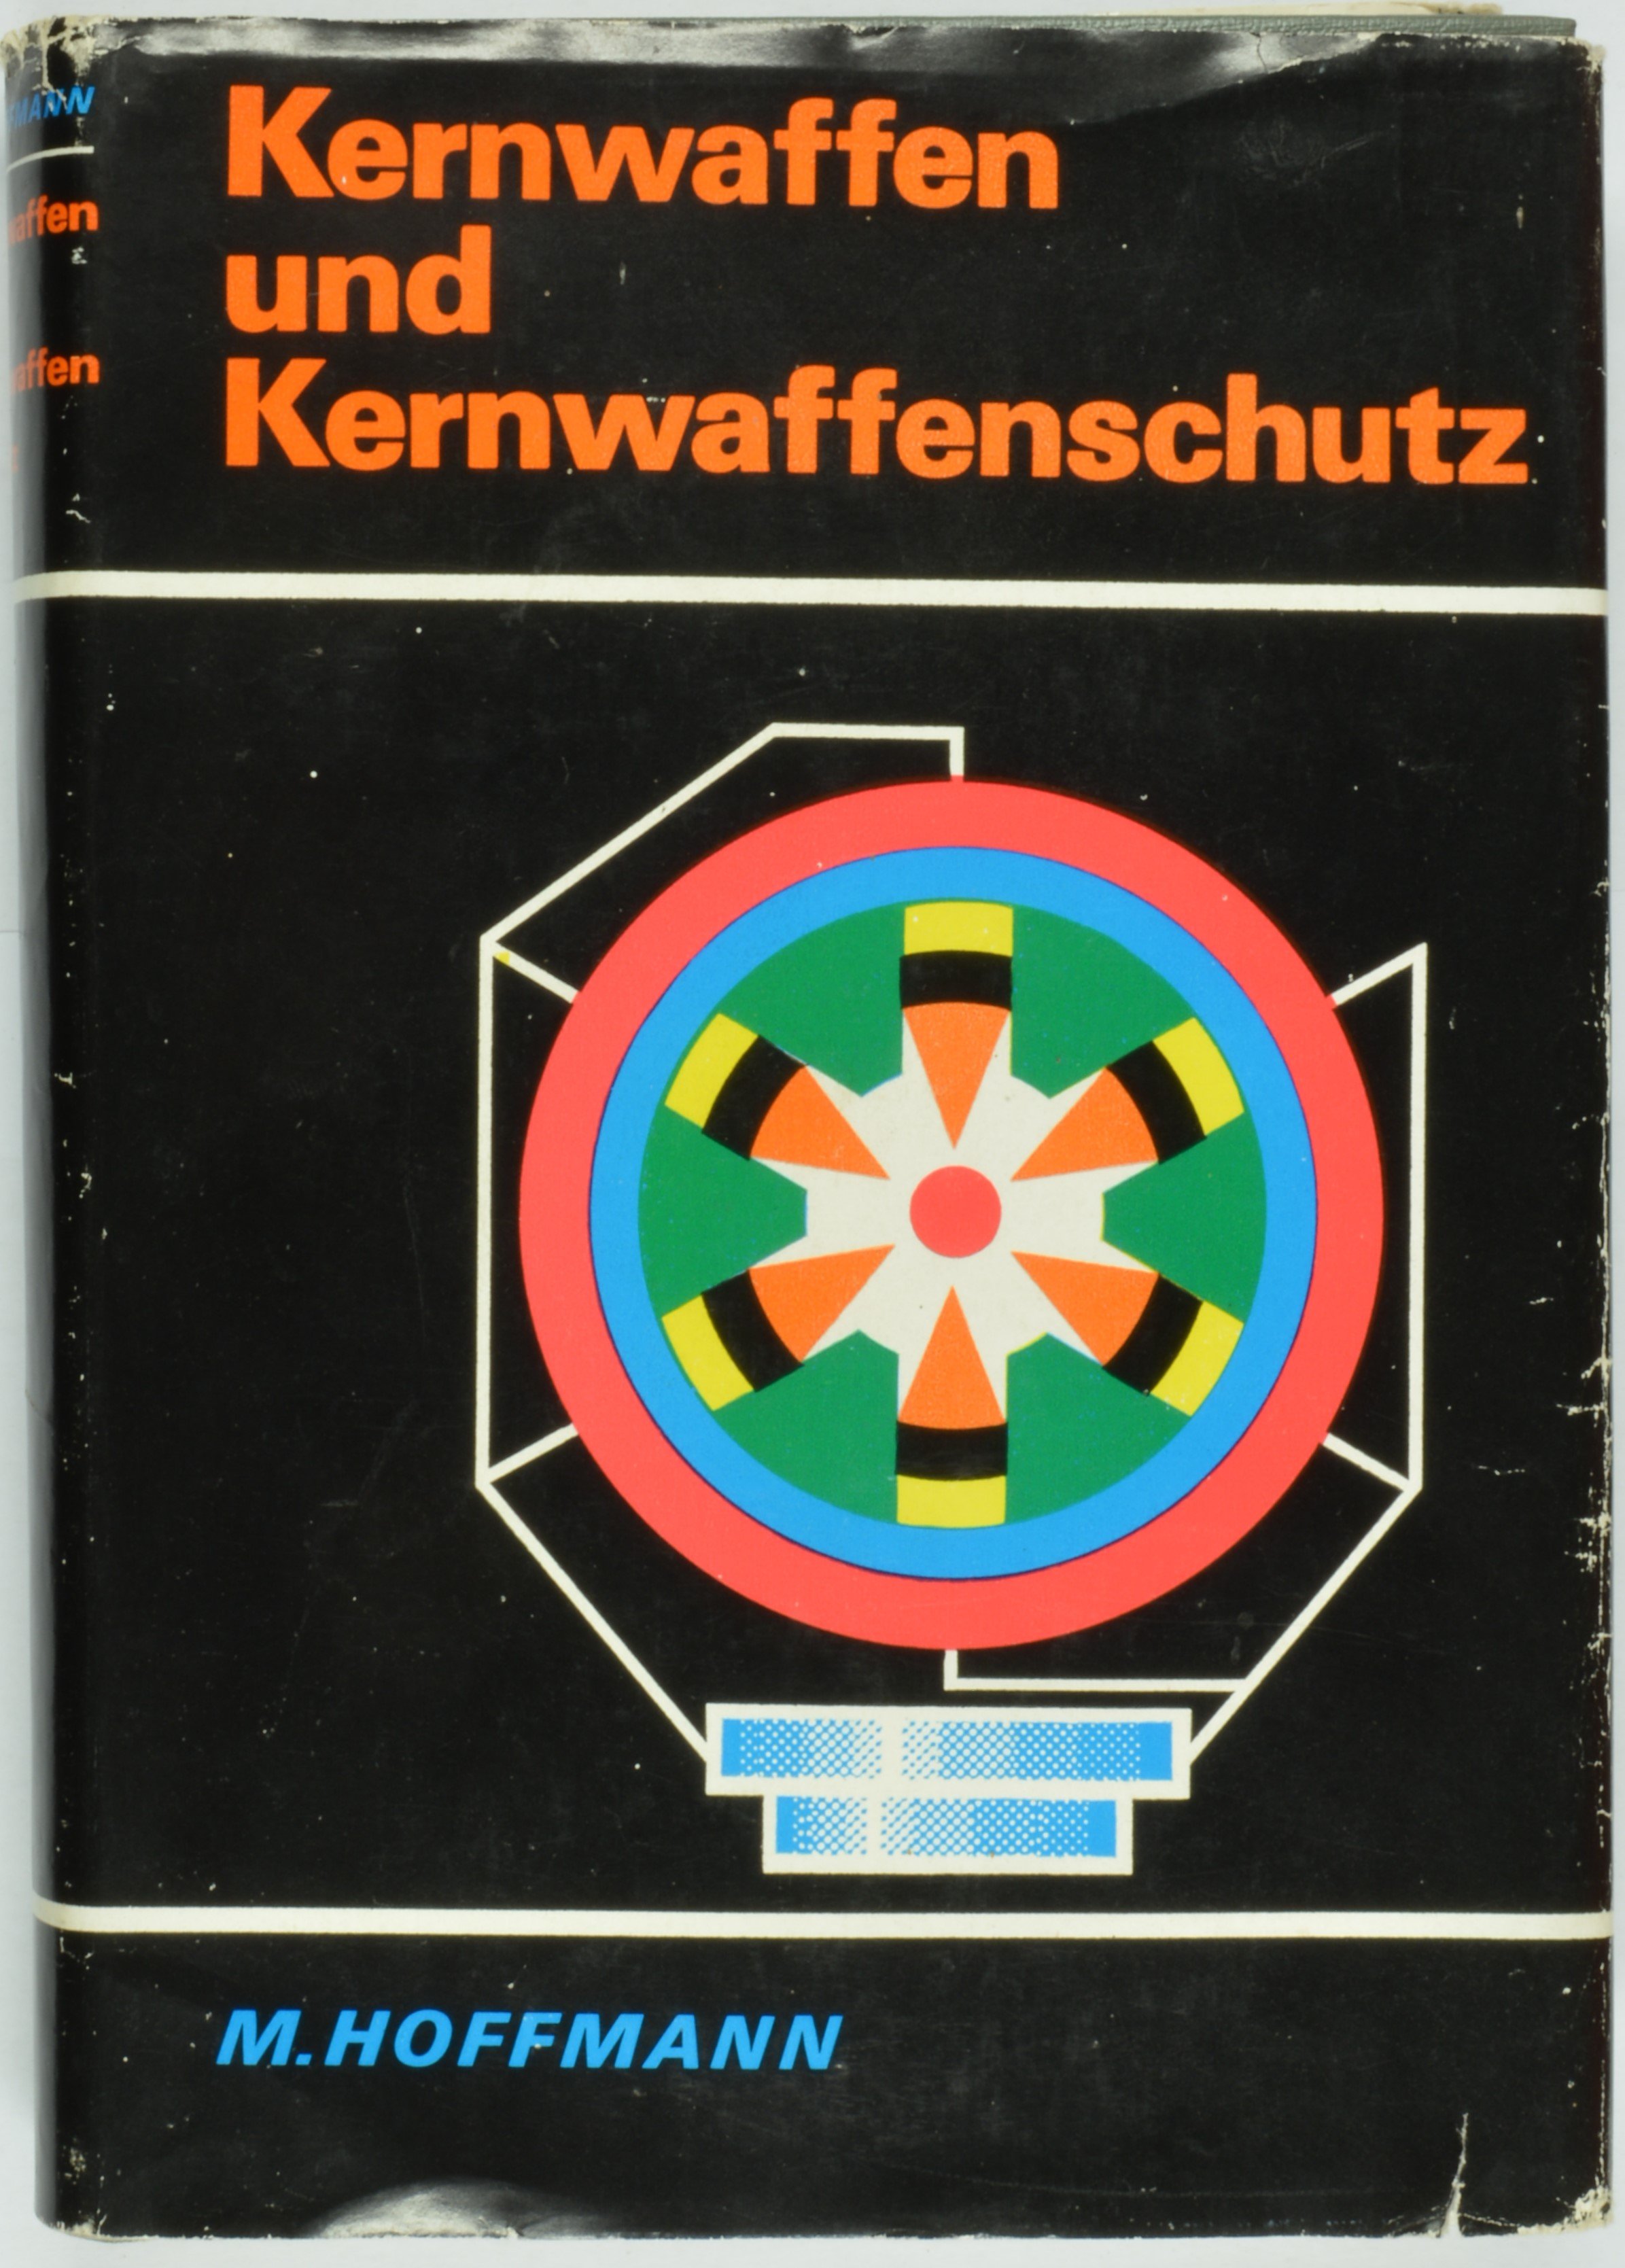 Buch: M. Hoffmann: Kernwaffen und Kernwaffenschutz (DDR Geschichtsmuseum im Dokumentationszentrum Perleberg CC BY-SA)